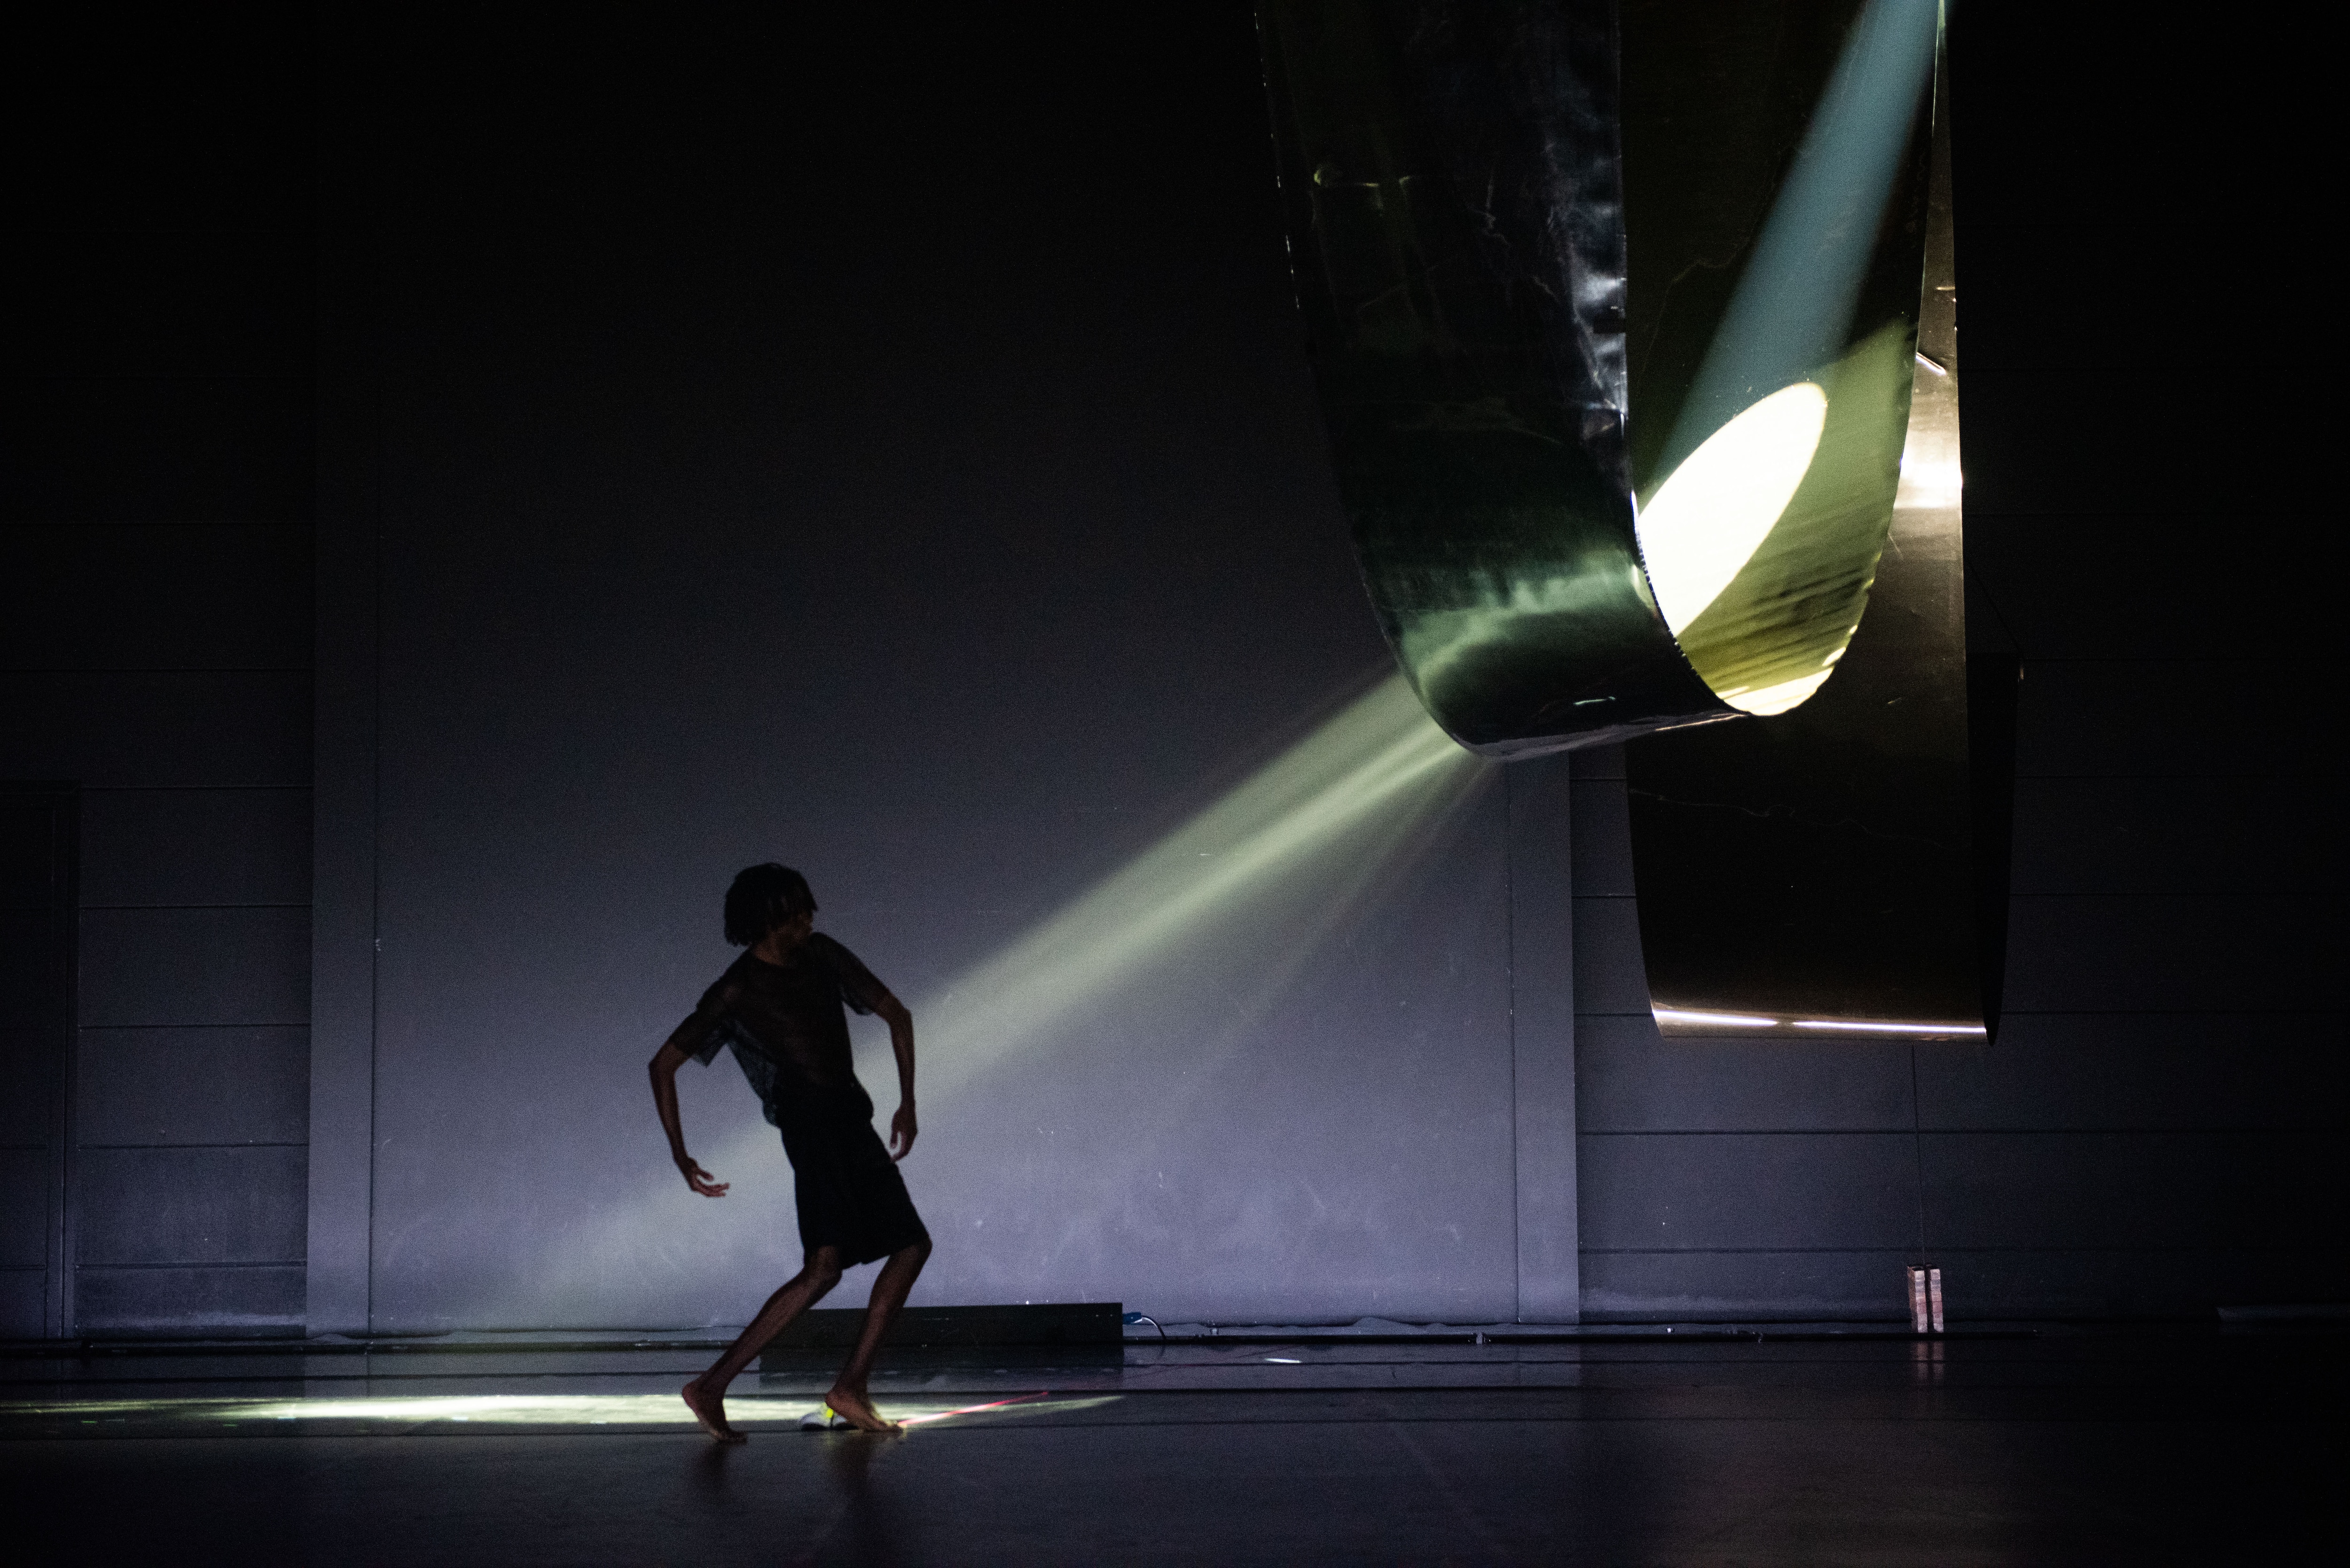 Danseur de profil sur une scène sombre face à un structure diffusant un rai de lumière